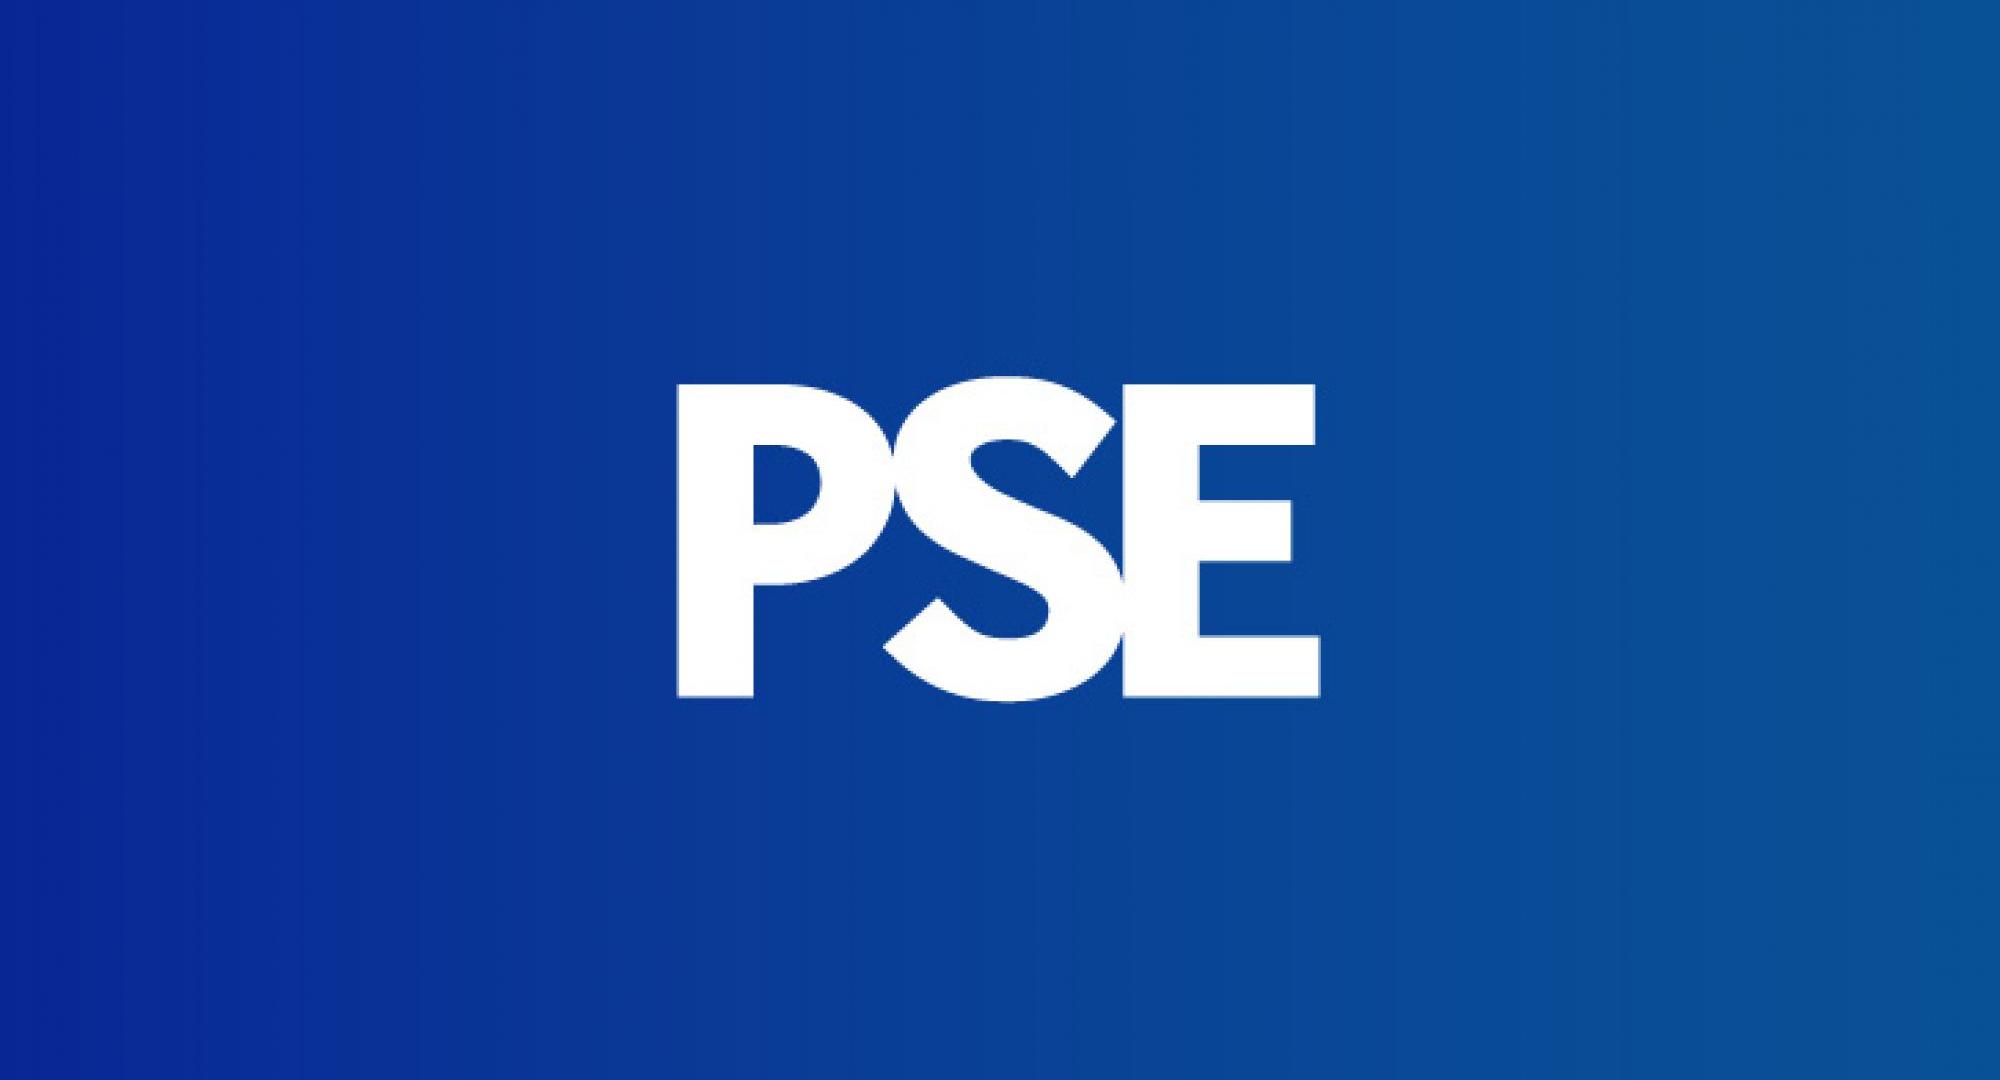 PSE podcast header